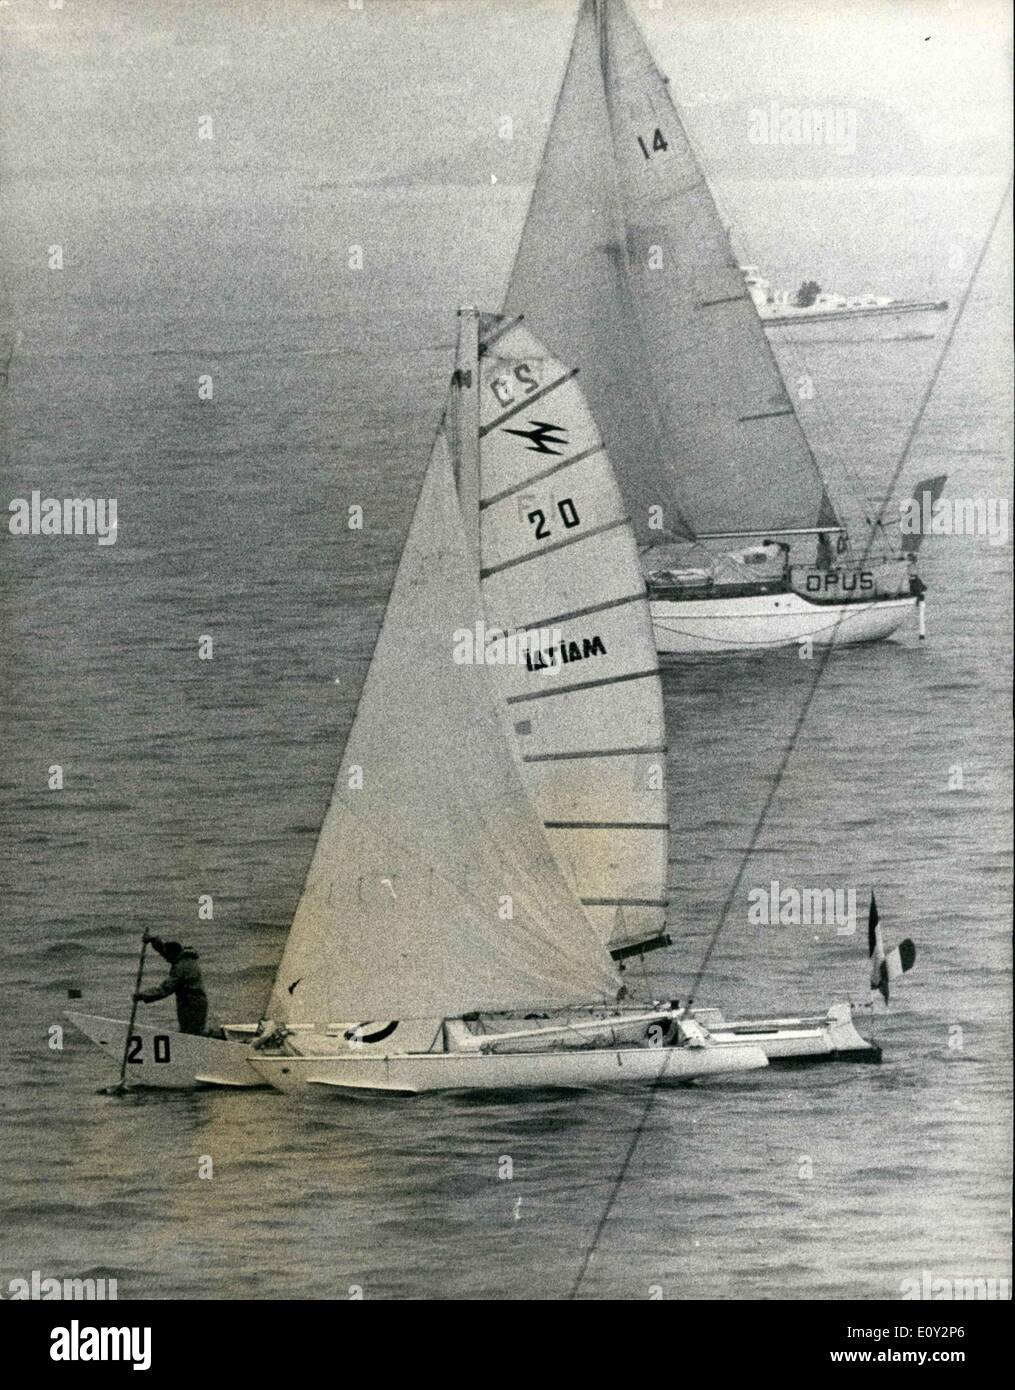 Giugno 06, 1968 - l'inizio di una mano sola traduzione di Yacht Race da Plymouth. 35 yacht esposti da Plymouth ieri su 3.000 miglio a mano singola gara attraverso l'atlantico a Newport, Rhode Island . La gara è iniziata quasi in calma piatta e pioggia battente. La foto mostra Comndt. B.Waquet (Francia) tenta di ottenere il suo Sloop (TRI) ''Tamoure'' lo spostamento mediante un 'sweep' subito dopo lo start. In fondo è il sloop ''OPUS'', U.K. con equipaggio bank manager B.T.A Cooke. Foto Stock